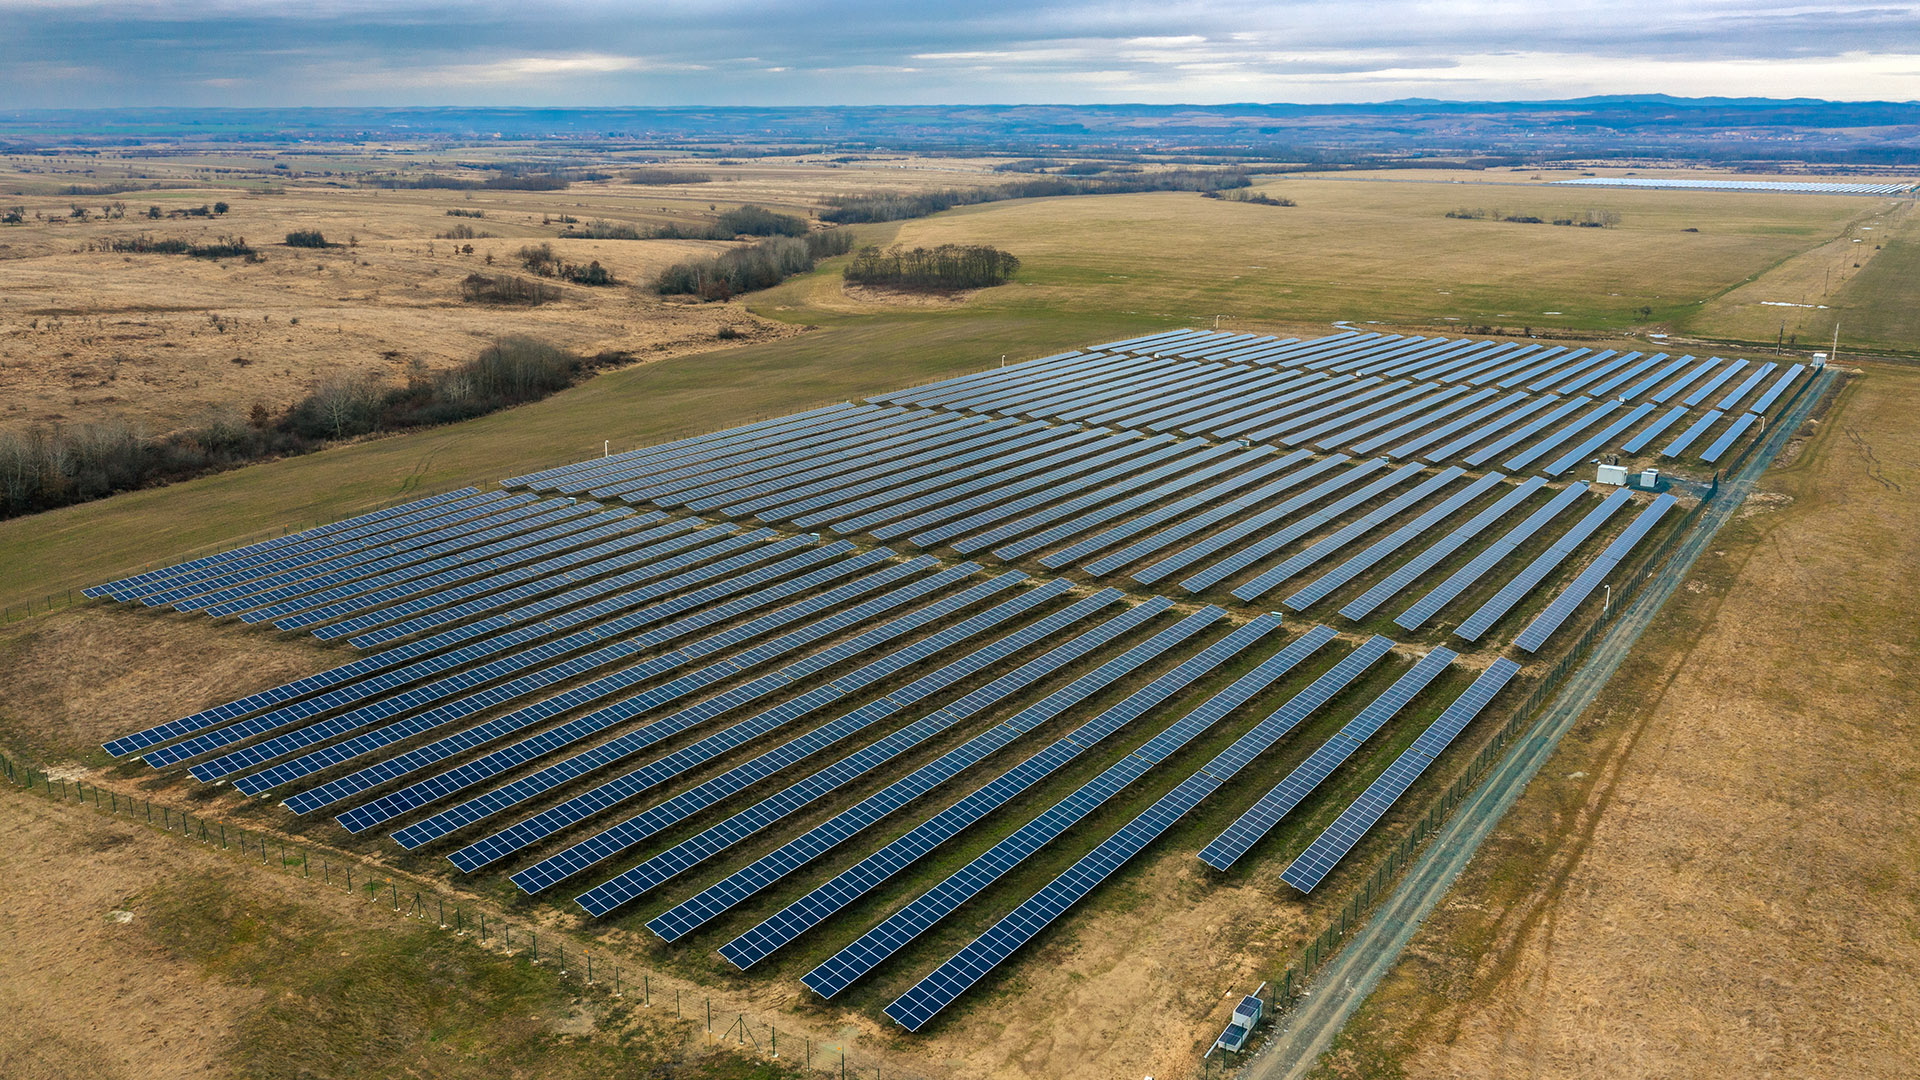 Un nou parc solar, deschis de Photon Energy în Timiș. Ar putea să aducă companiei peste jumătate de milion de euro pe an